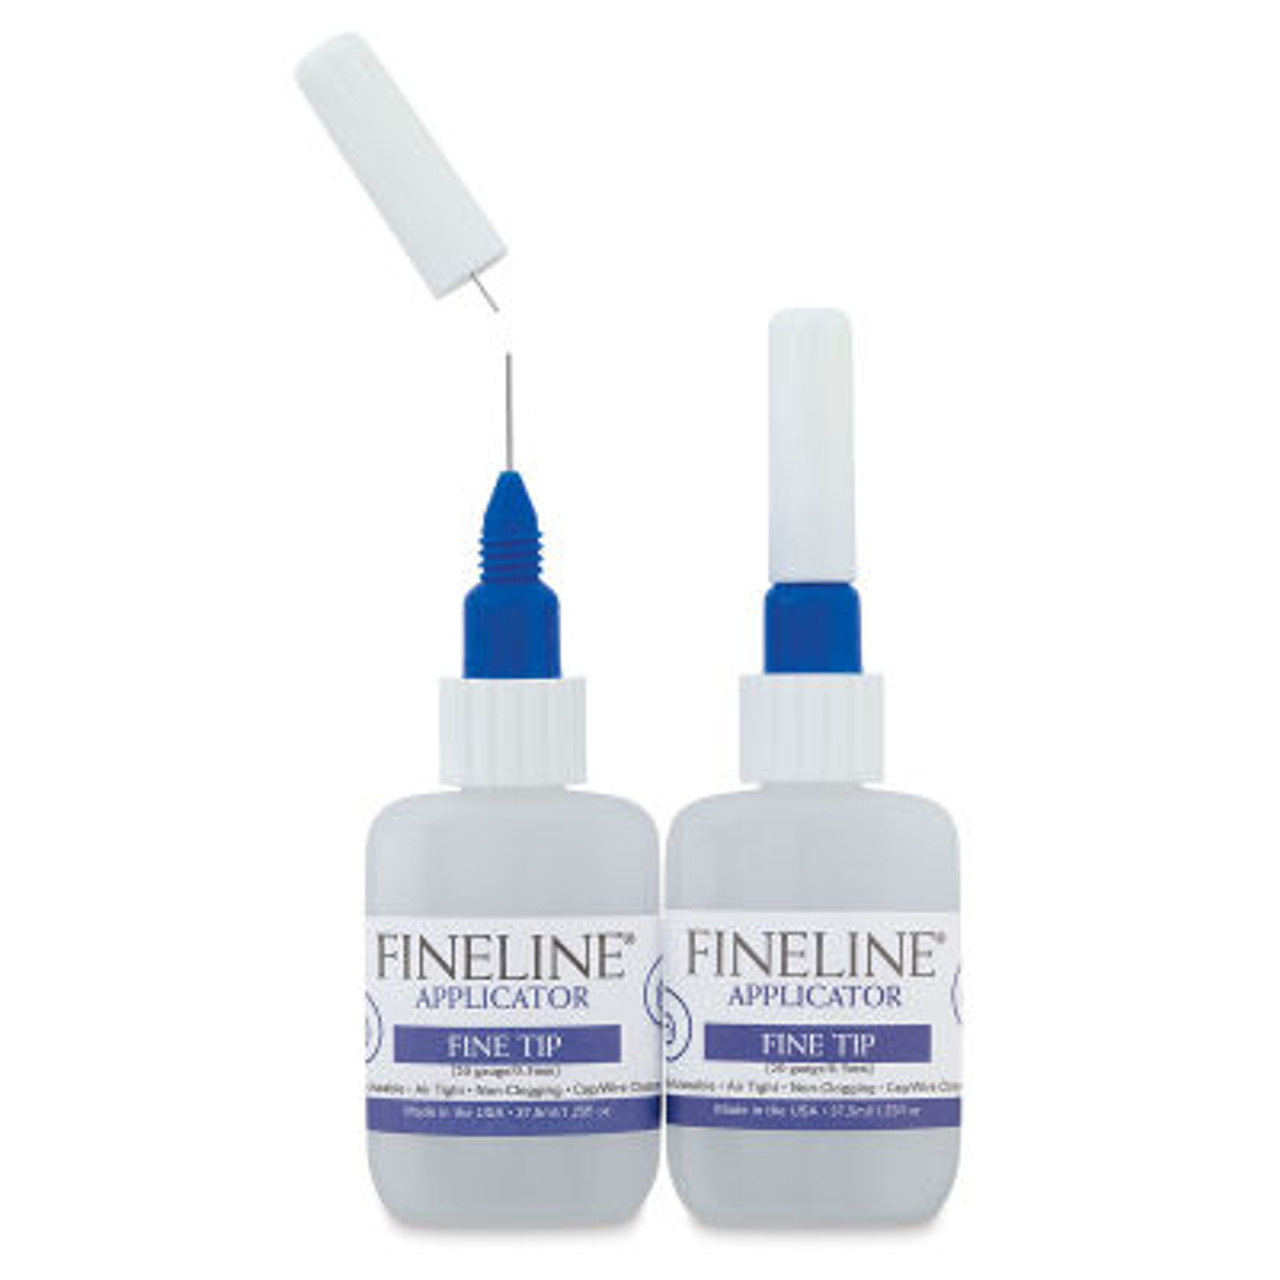 Fineline Applicator Triple Pack 18g Standard Tips and 30ml bottles